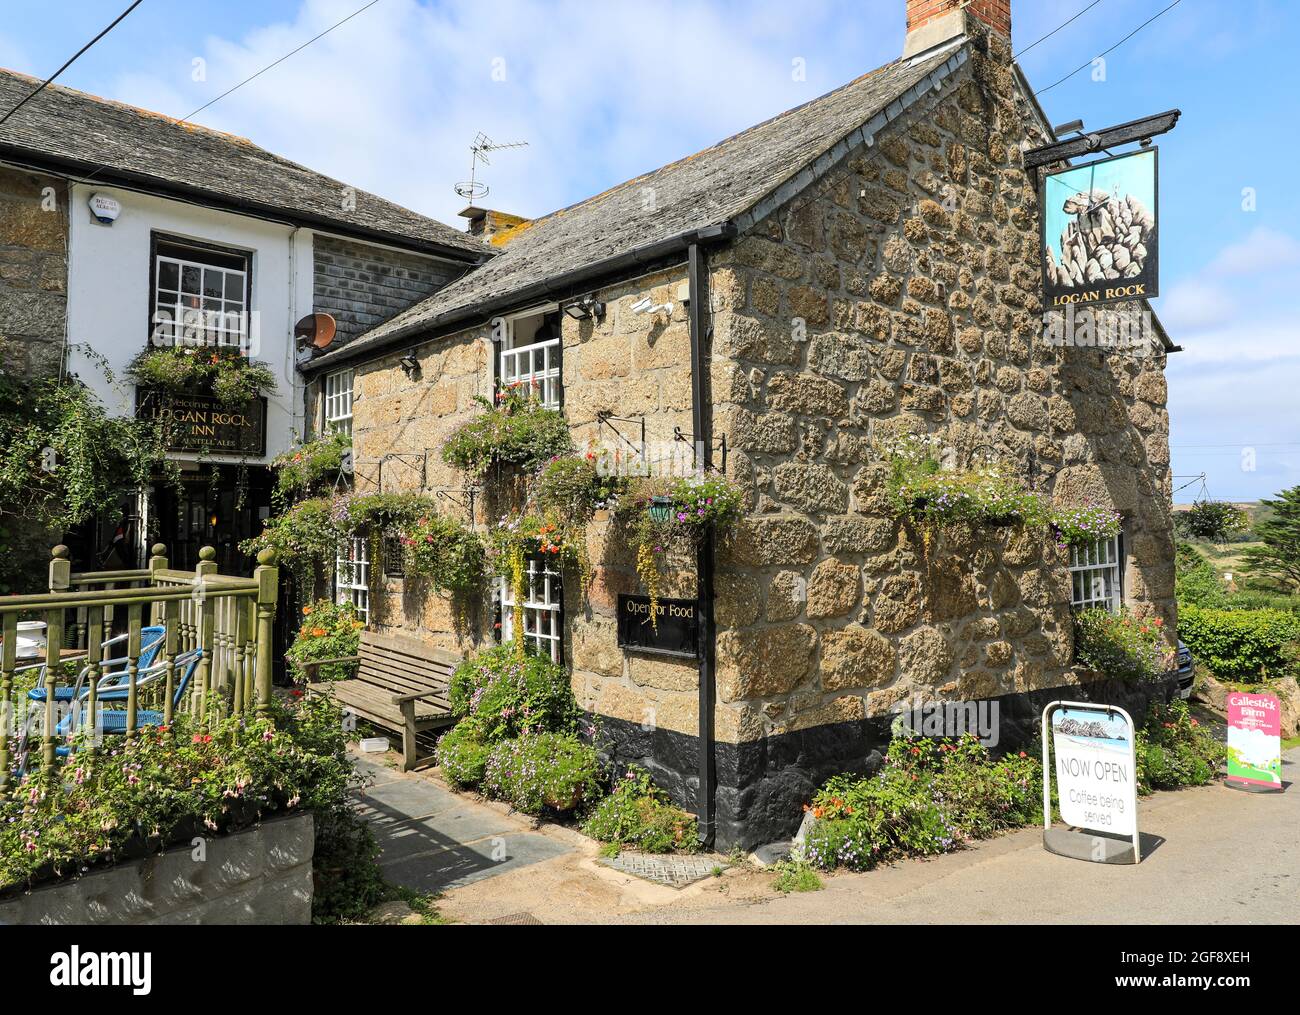 Il Logan Rock Inn, un pub o casa pubblica tradizionale del XVI secolo, Treen, Cornovaglia, Inghilterra, Regno Unito Foto Stock